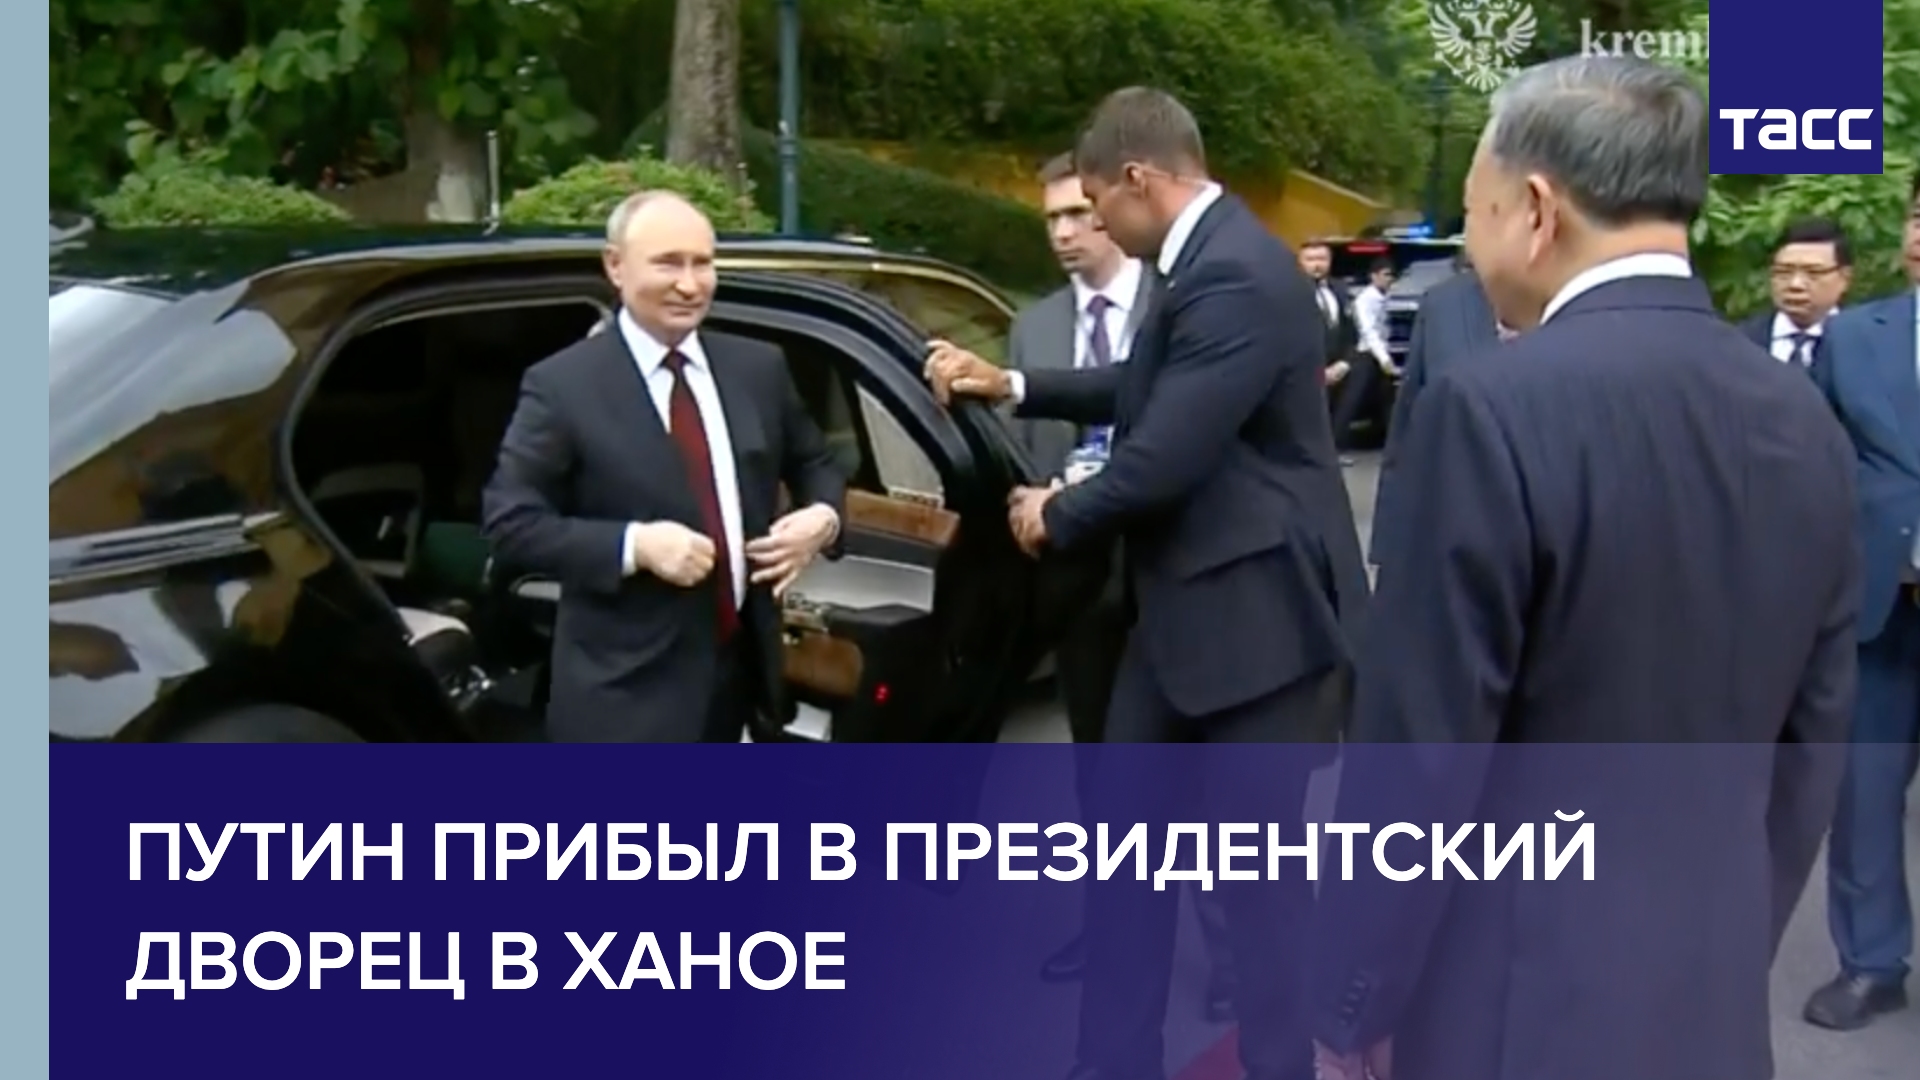 Путин прибыл в президентский дворец в Ханое